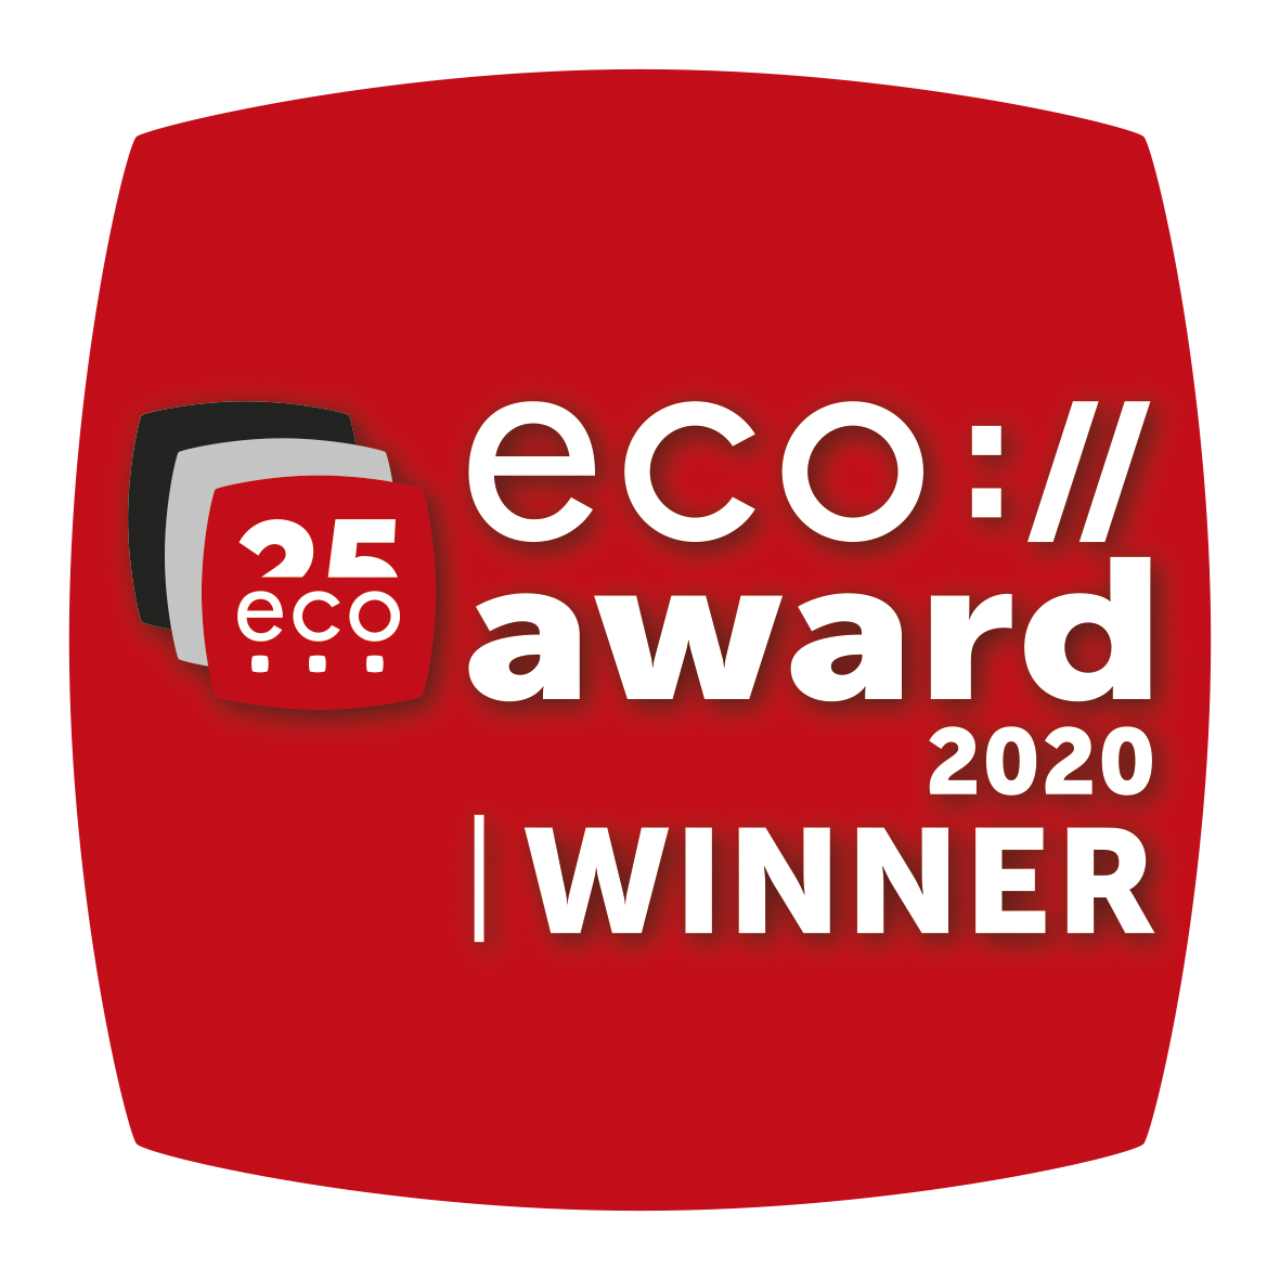 eco://award 2020